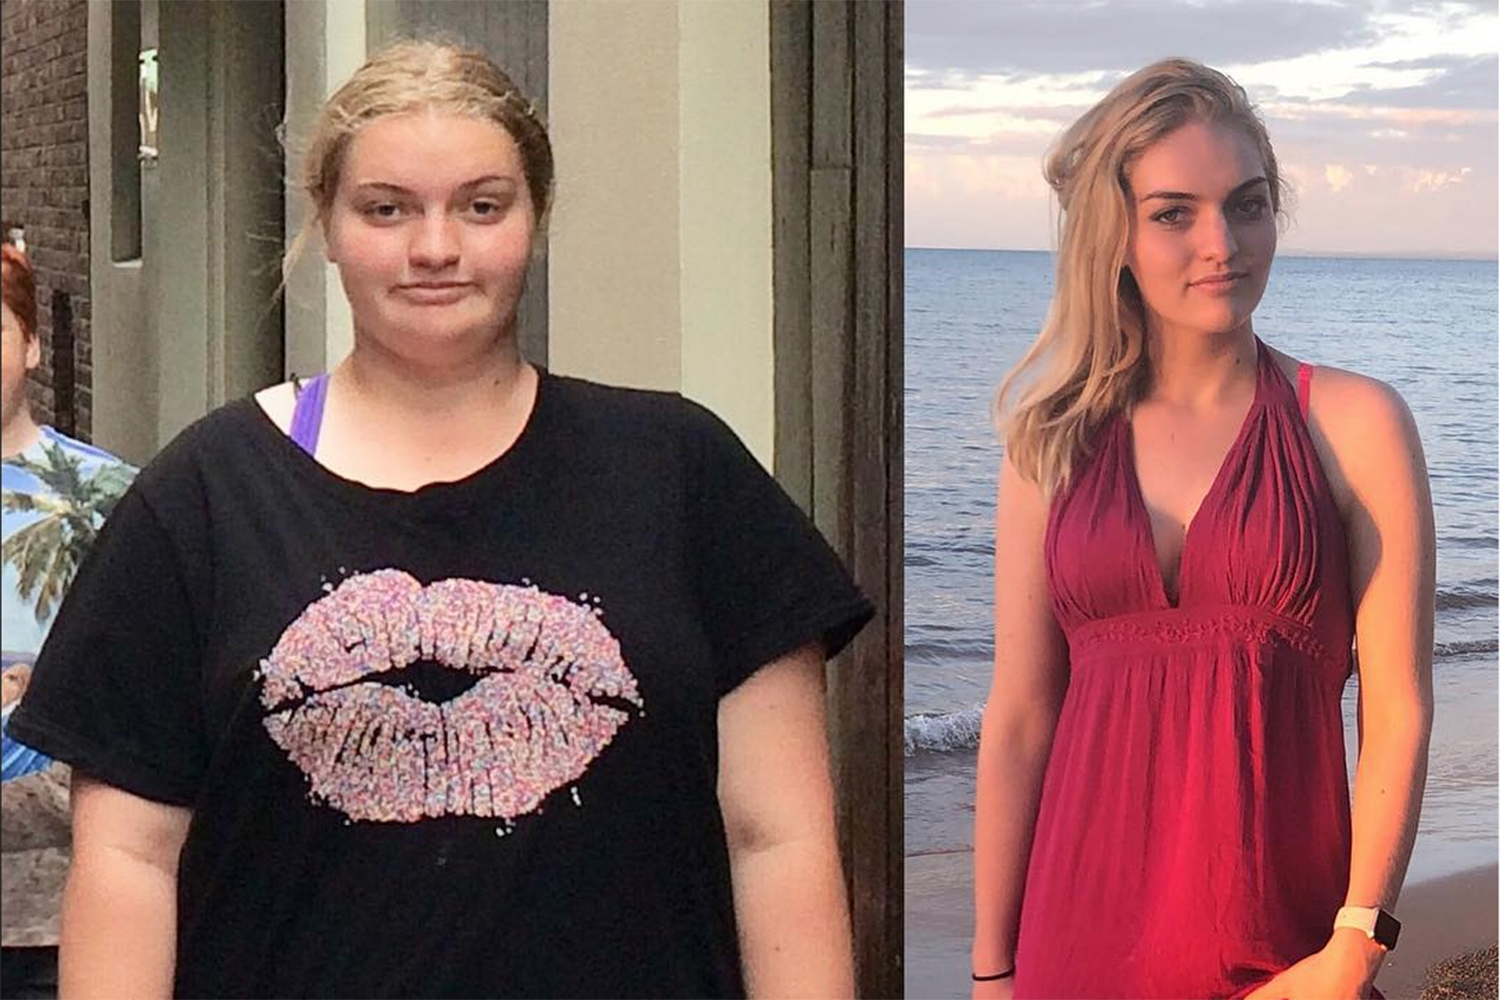 Australie : Longtemps en surpoids, une jeune femme décide de perdre 60 kilos et devient influenceuse